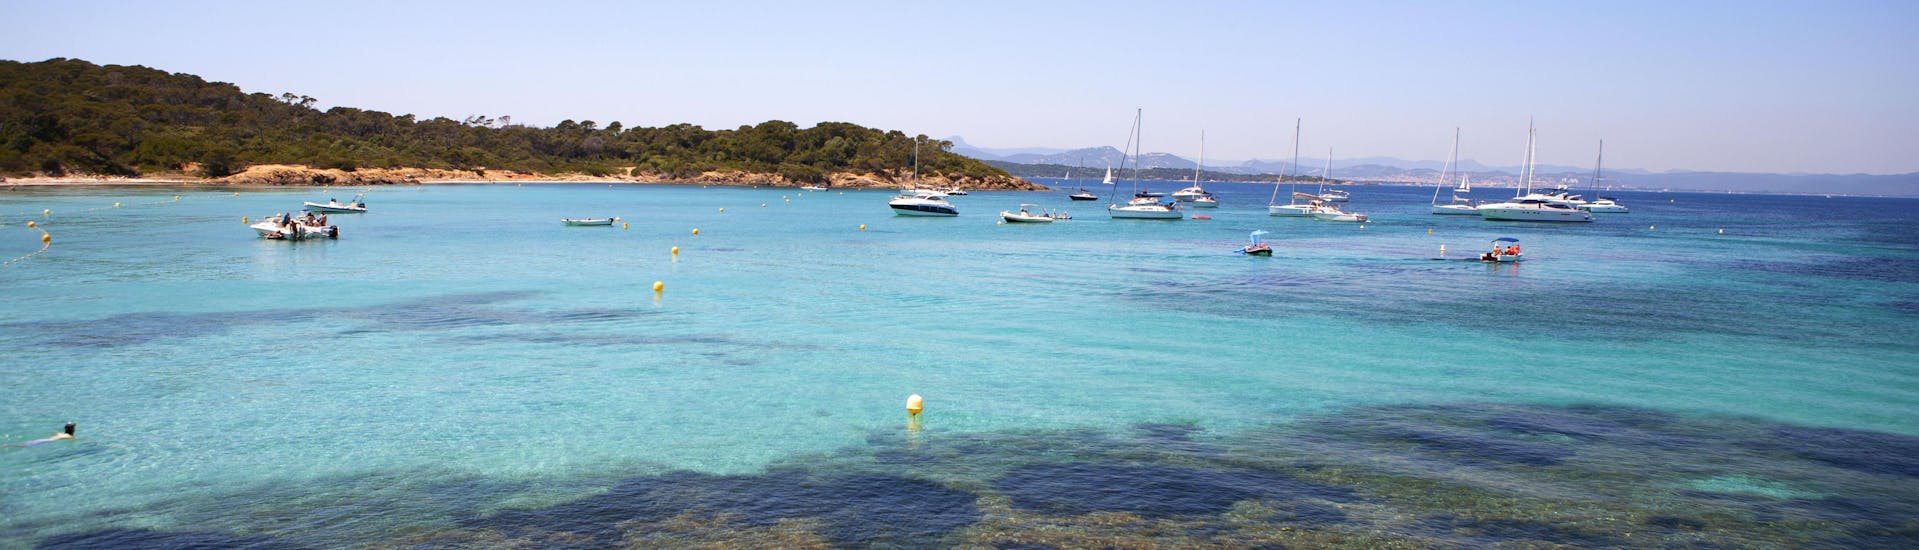 La meravigliosa costa di Bandol, una meta ambita per le gite in barca in Costa Azzurra.